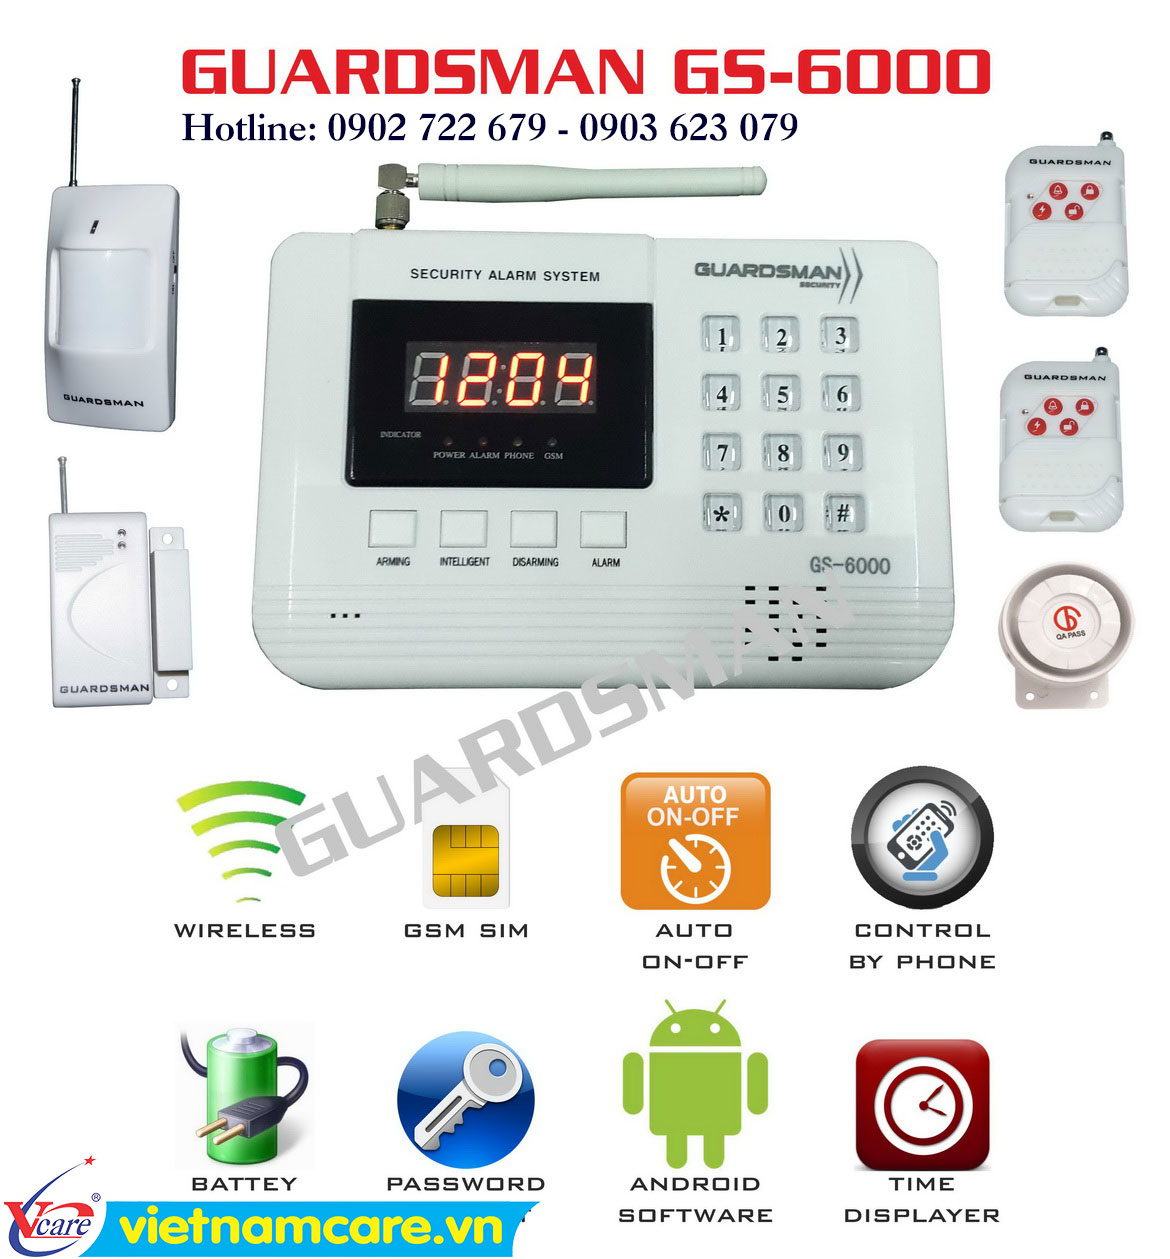 Hướng dẩn sử dụng và cài đặt hệ thống báo động GUARDSMAN GS-6000